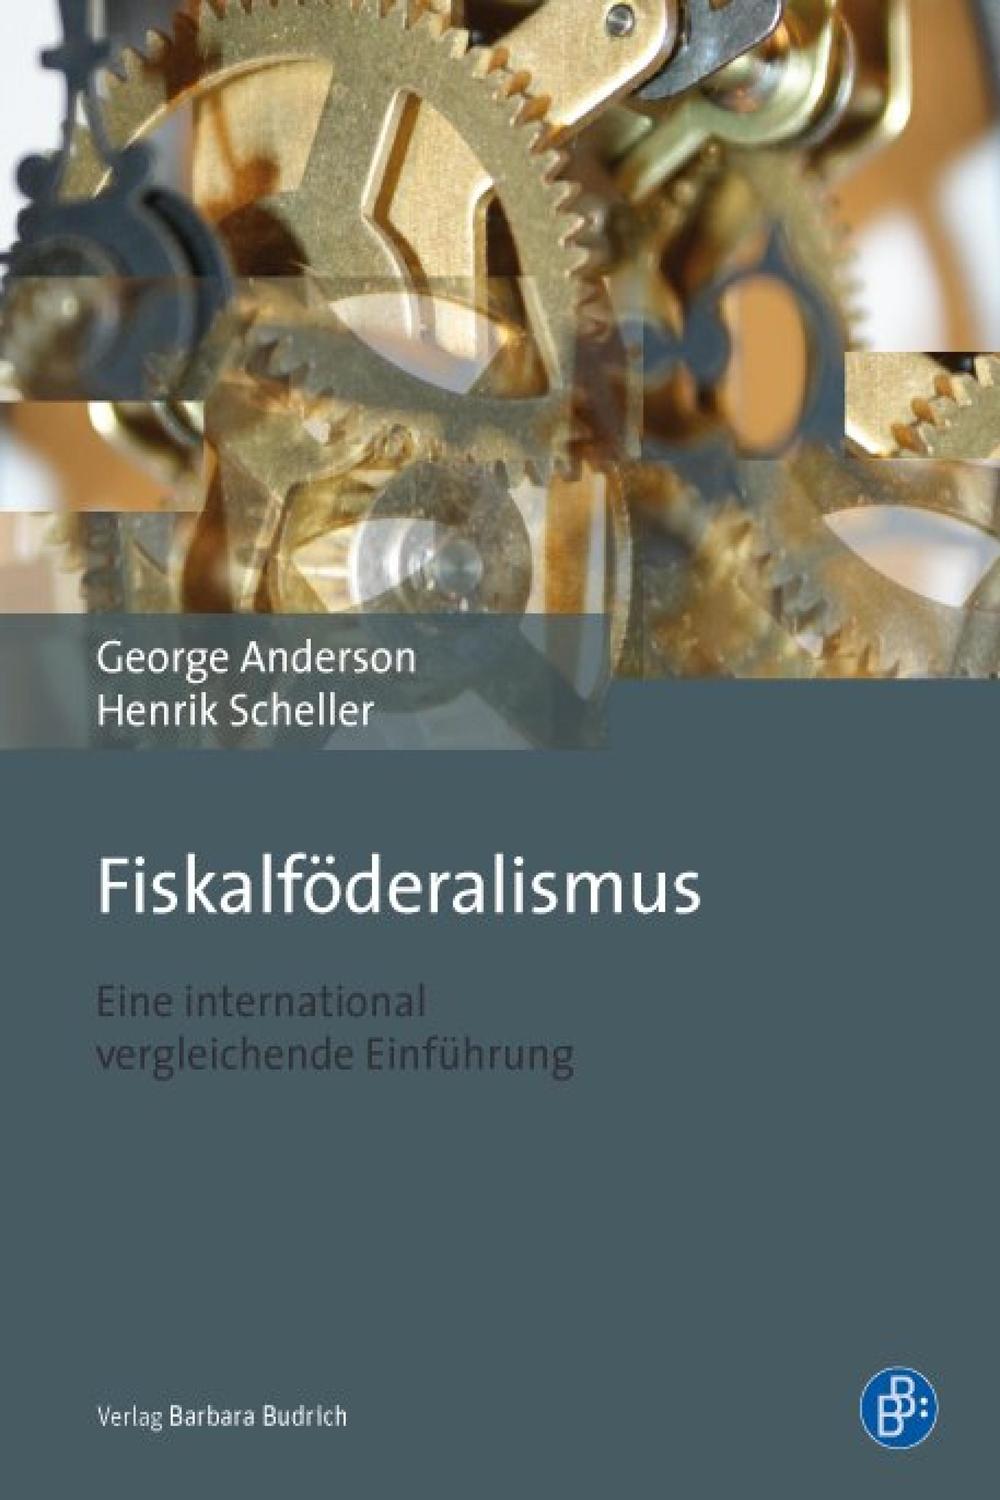 Fiskalföderalismus - George Anderson, Henrik Scheller